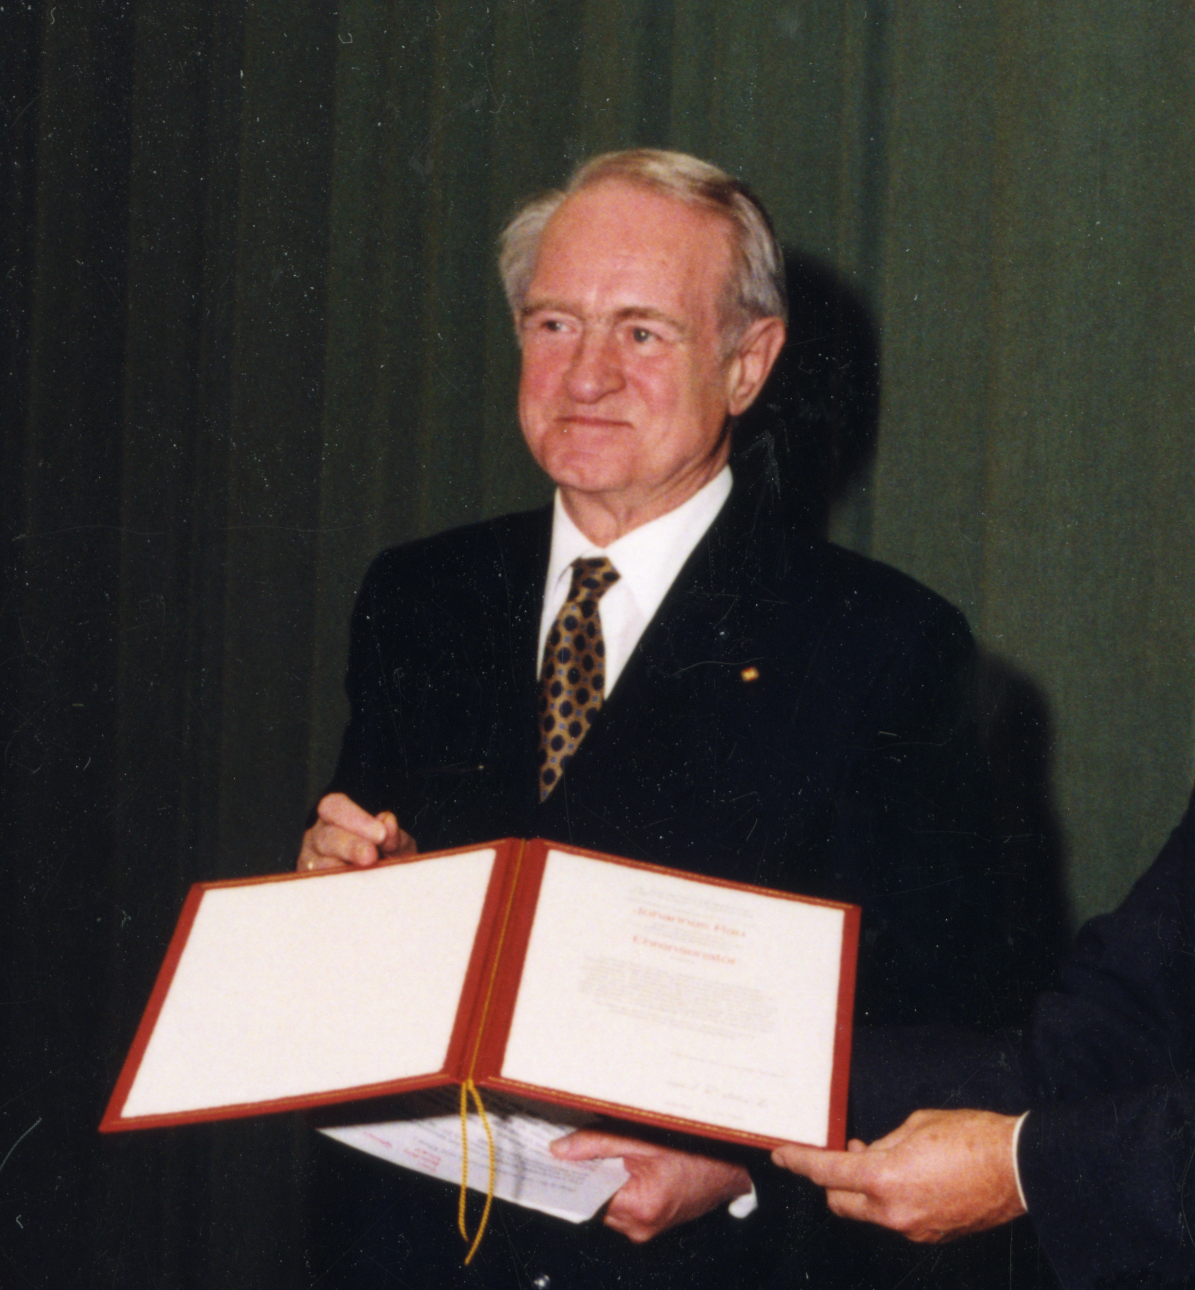 Fotoausschnitt Verleihung Ehrensenatorwürde an Johannes Rau 1998